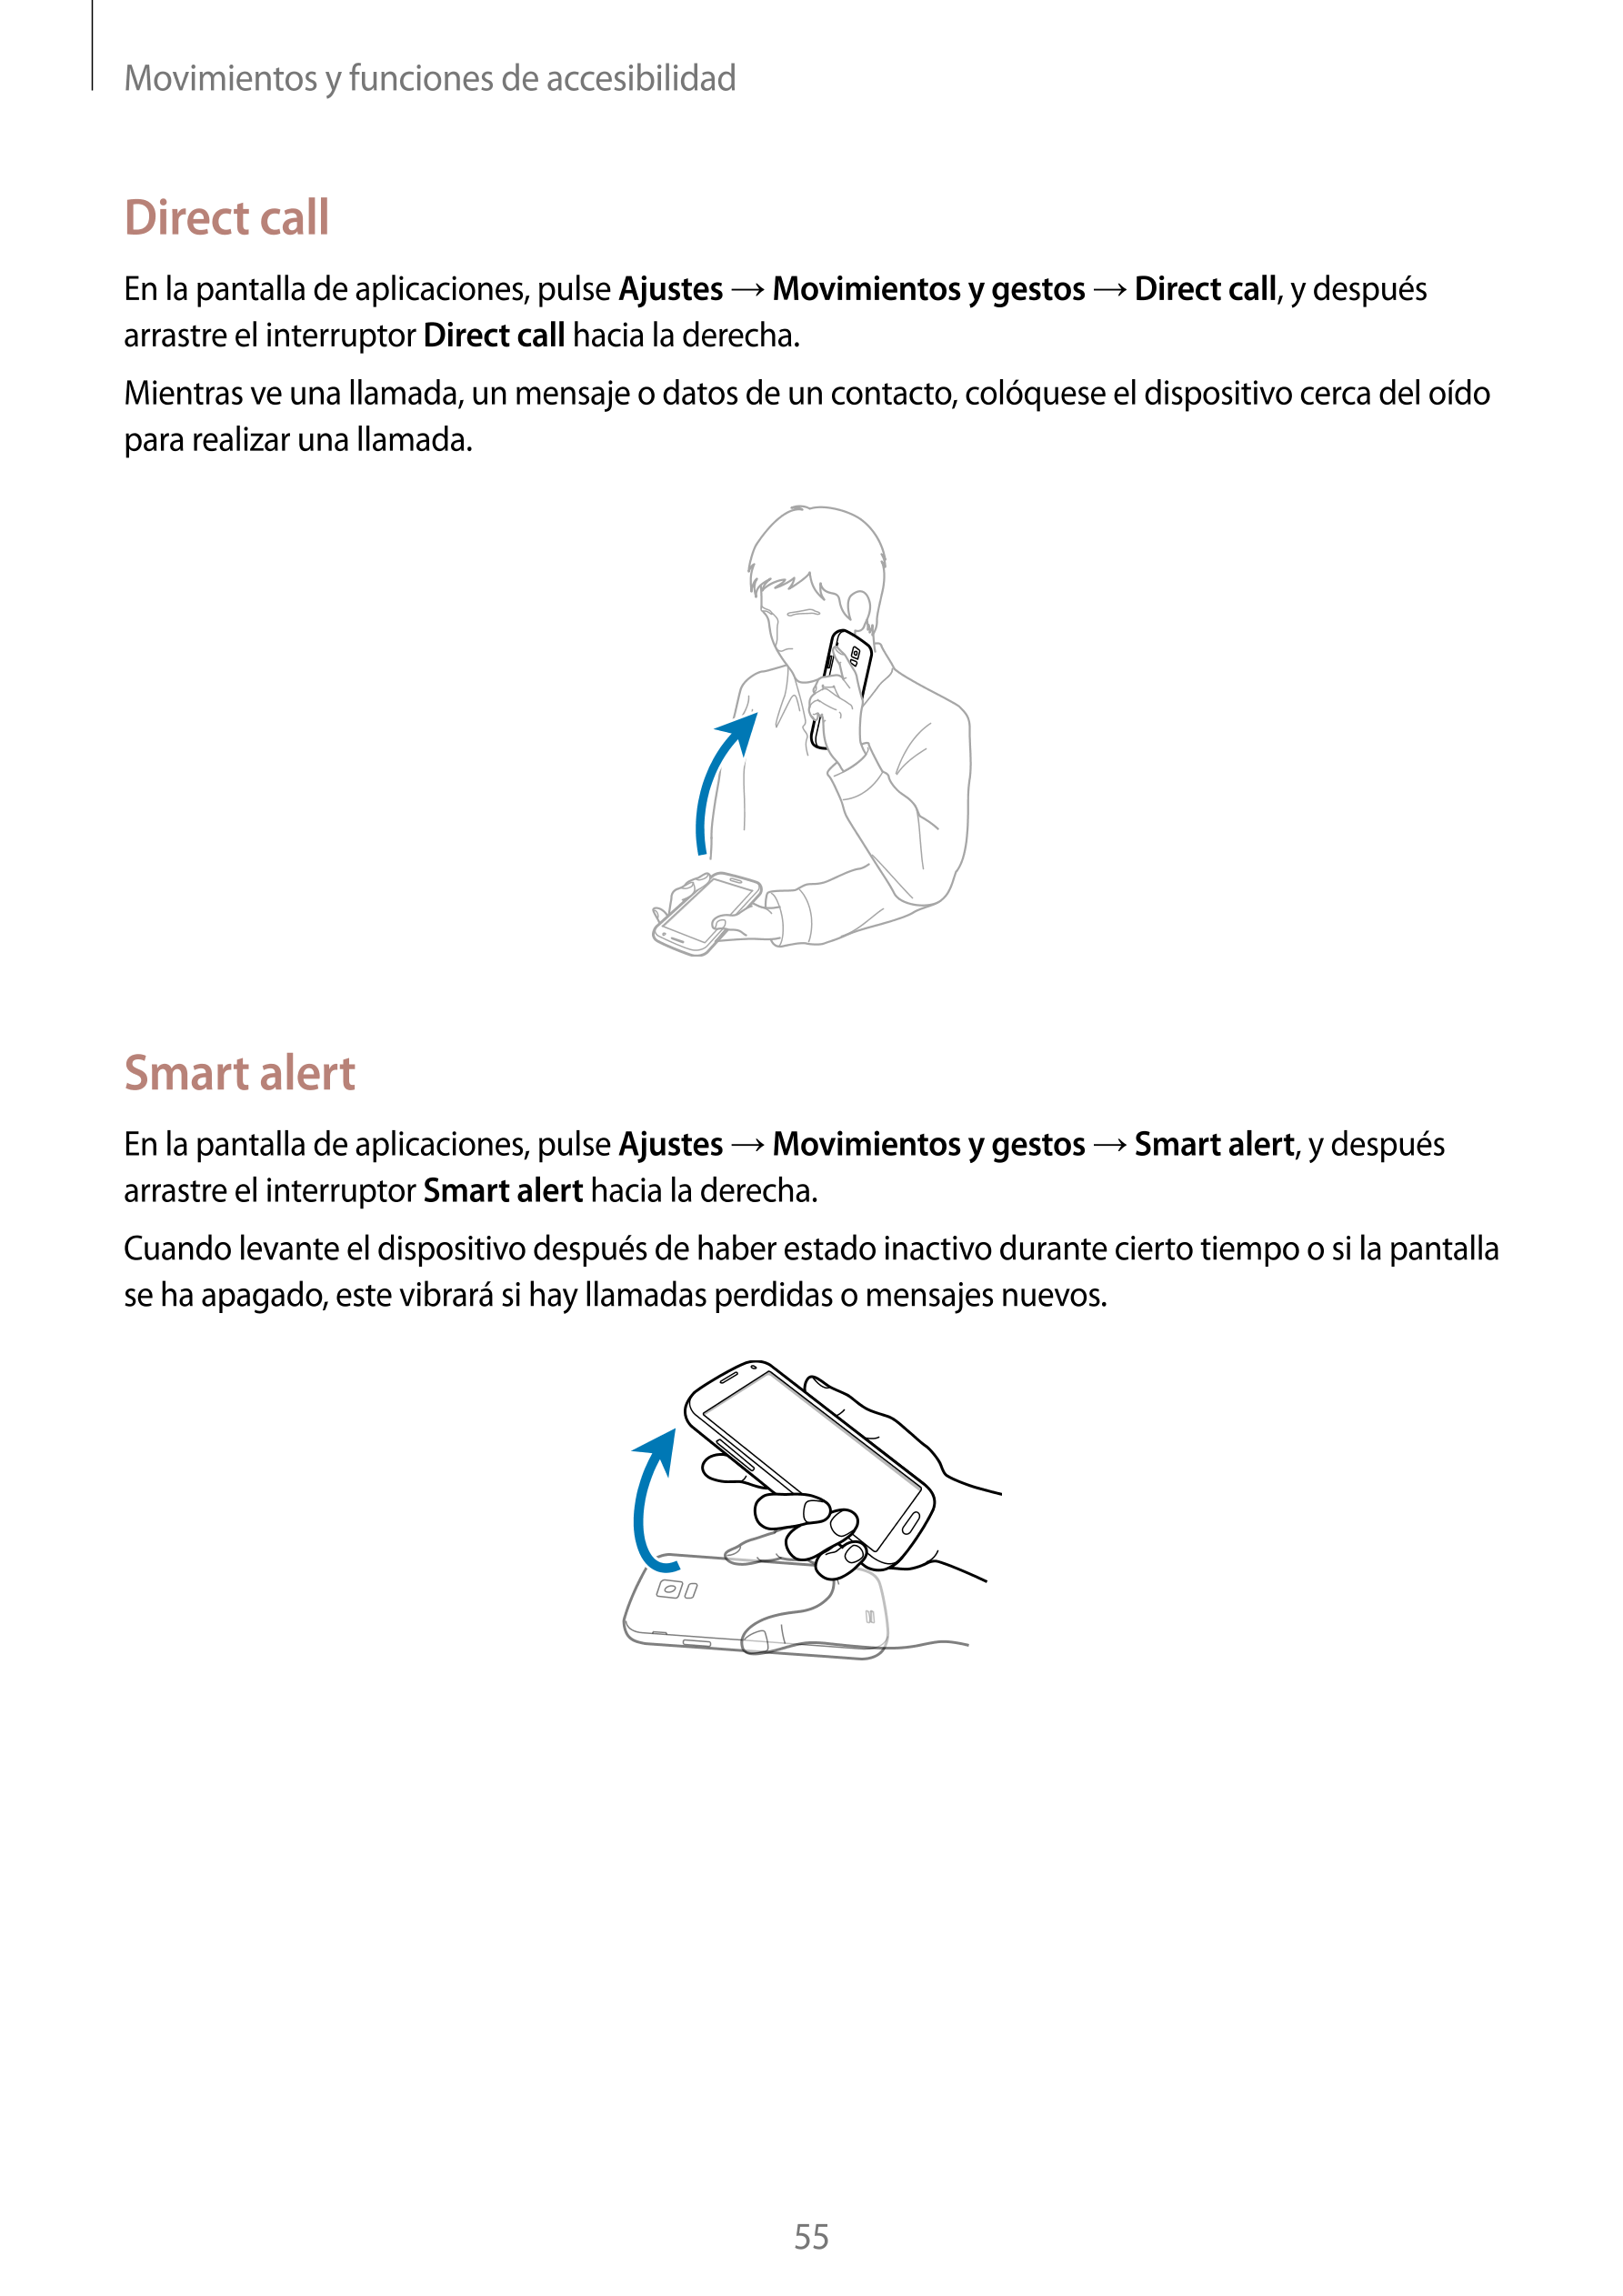 Movimientos y funciones de accesibilidad
Direct call
En la pantalla de aplicaciones, pulse  Ajustes  →  Movimientos y gestos  → 